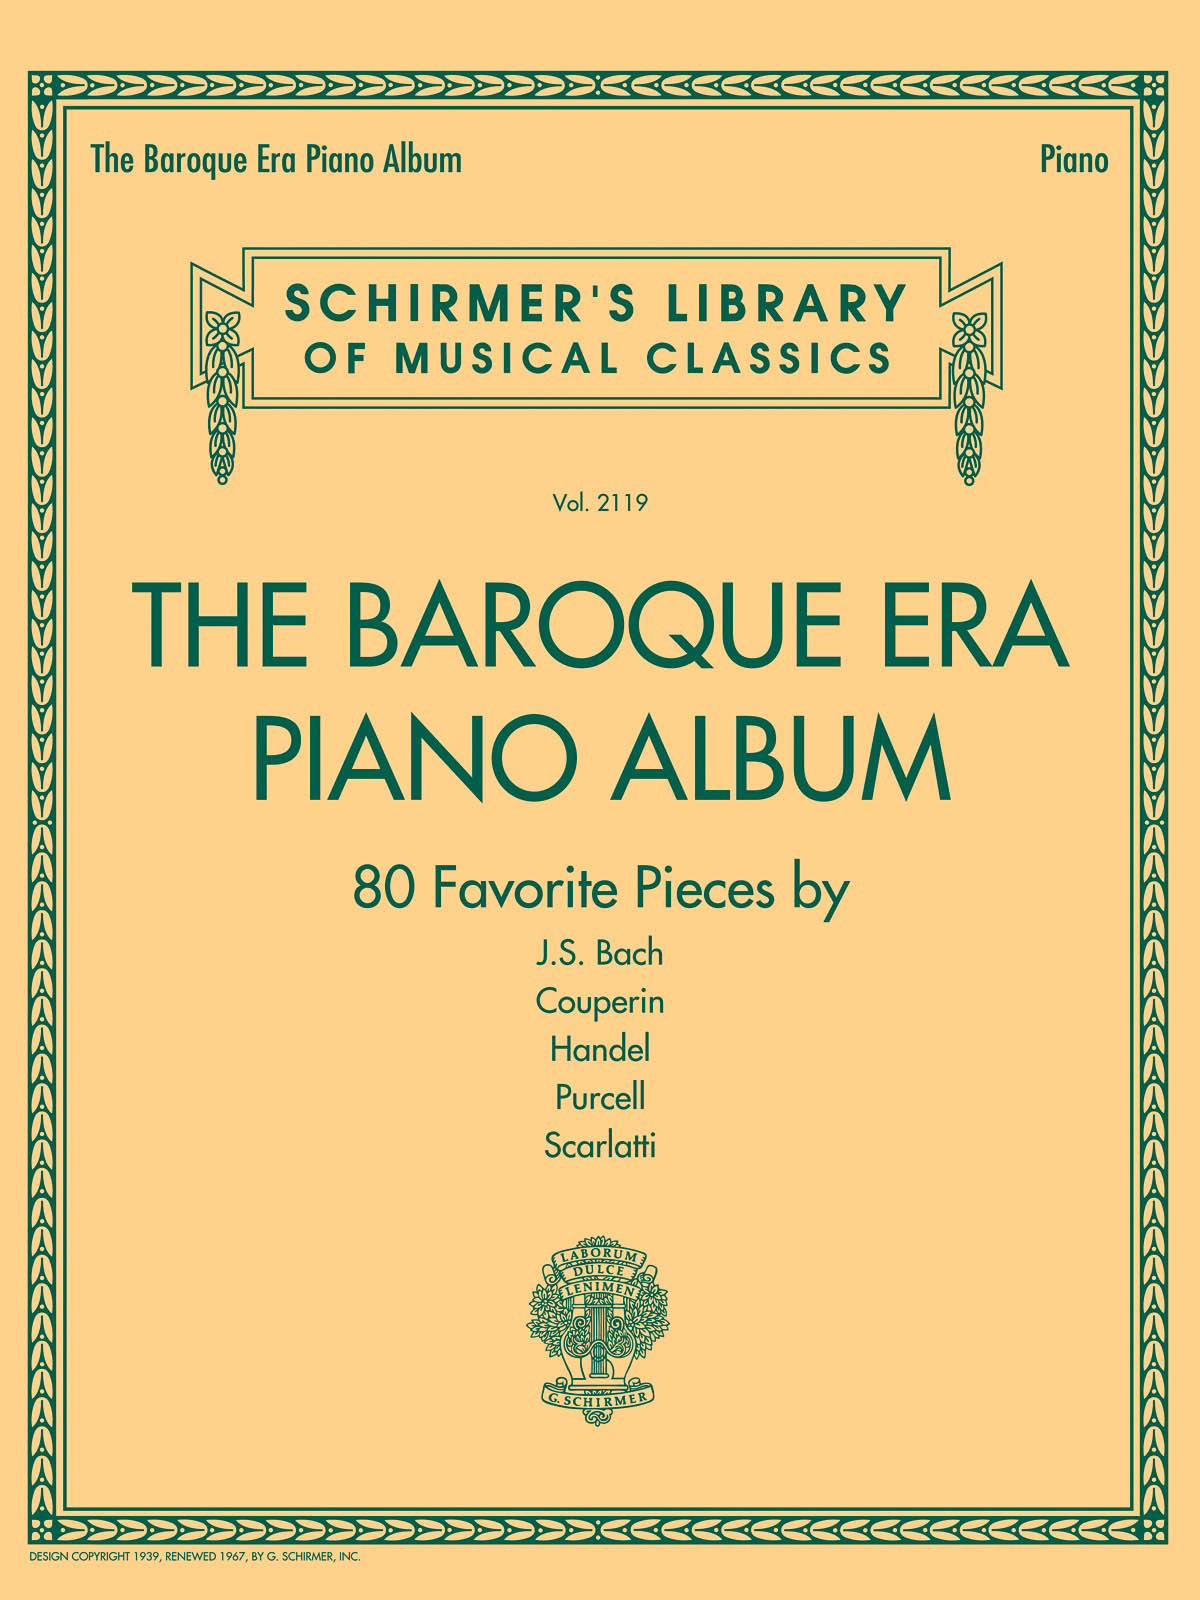 The Baroque Era Piano Album - 80 Favorite Pieces by 5 Composers - klasické skladby na klavír